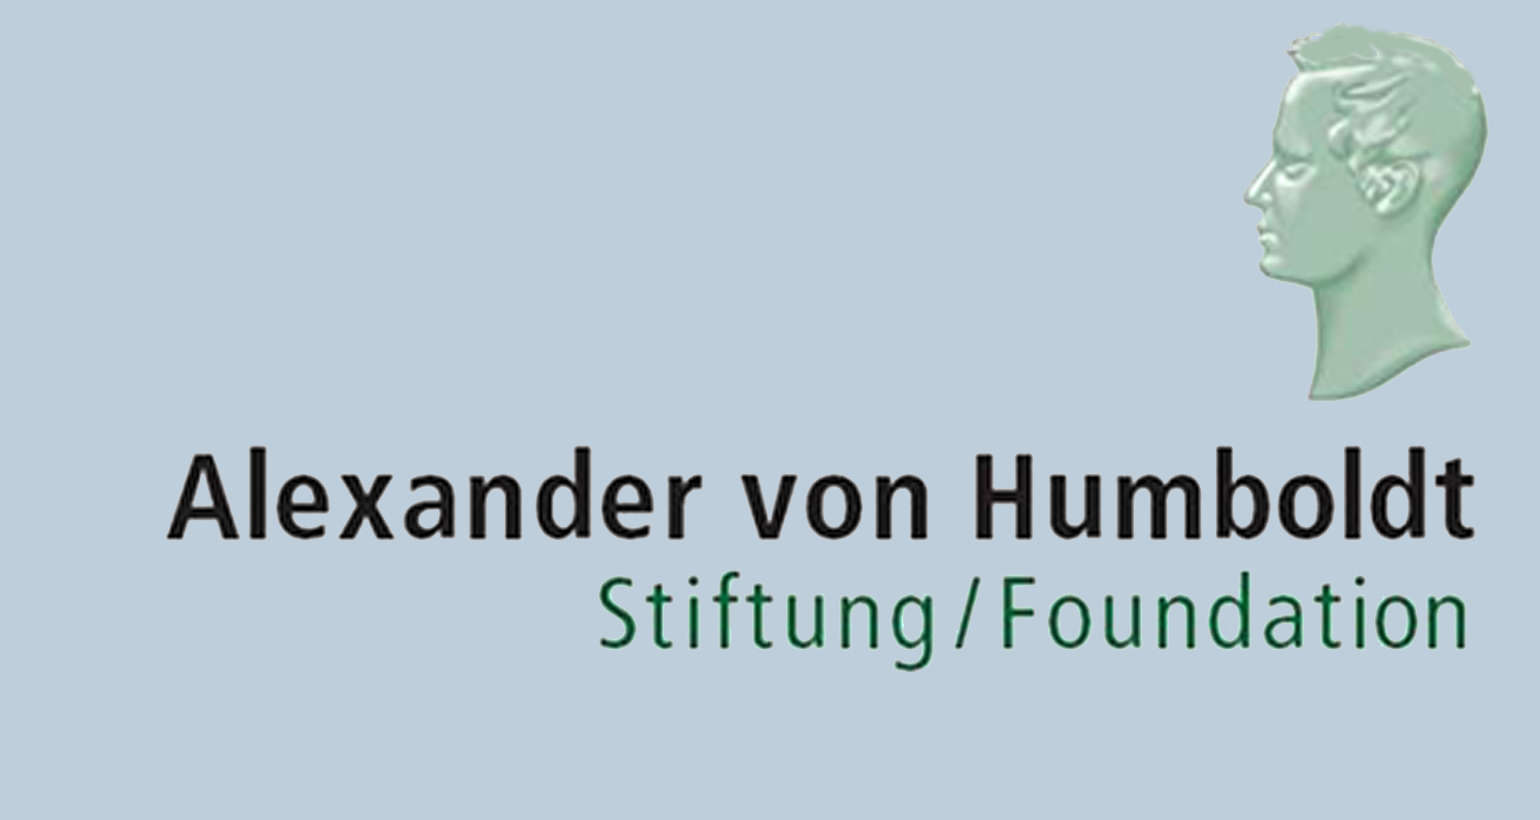 500 bourses pour des études doctorales et postdoctorales offertes par la Fondation allemande Humboldt pour candidats internationaux en Allemagne